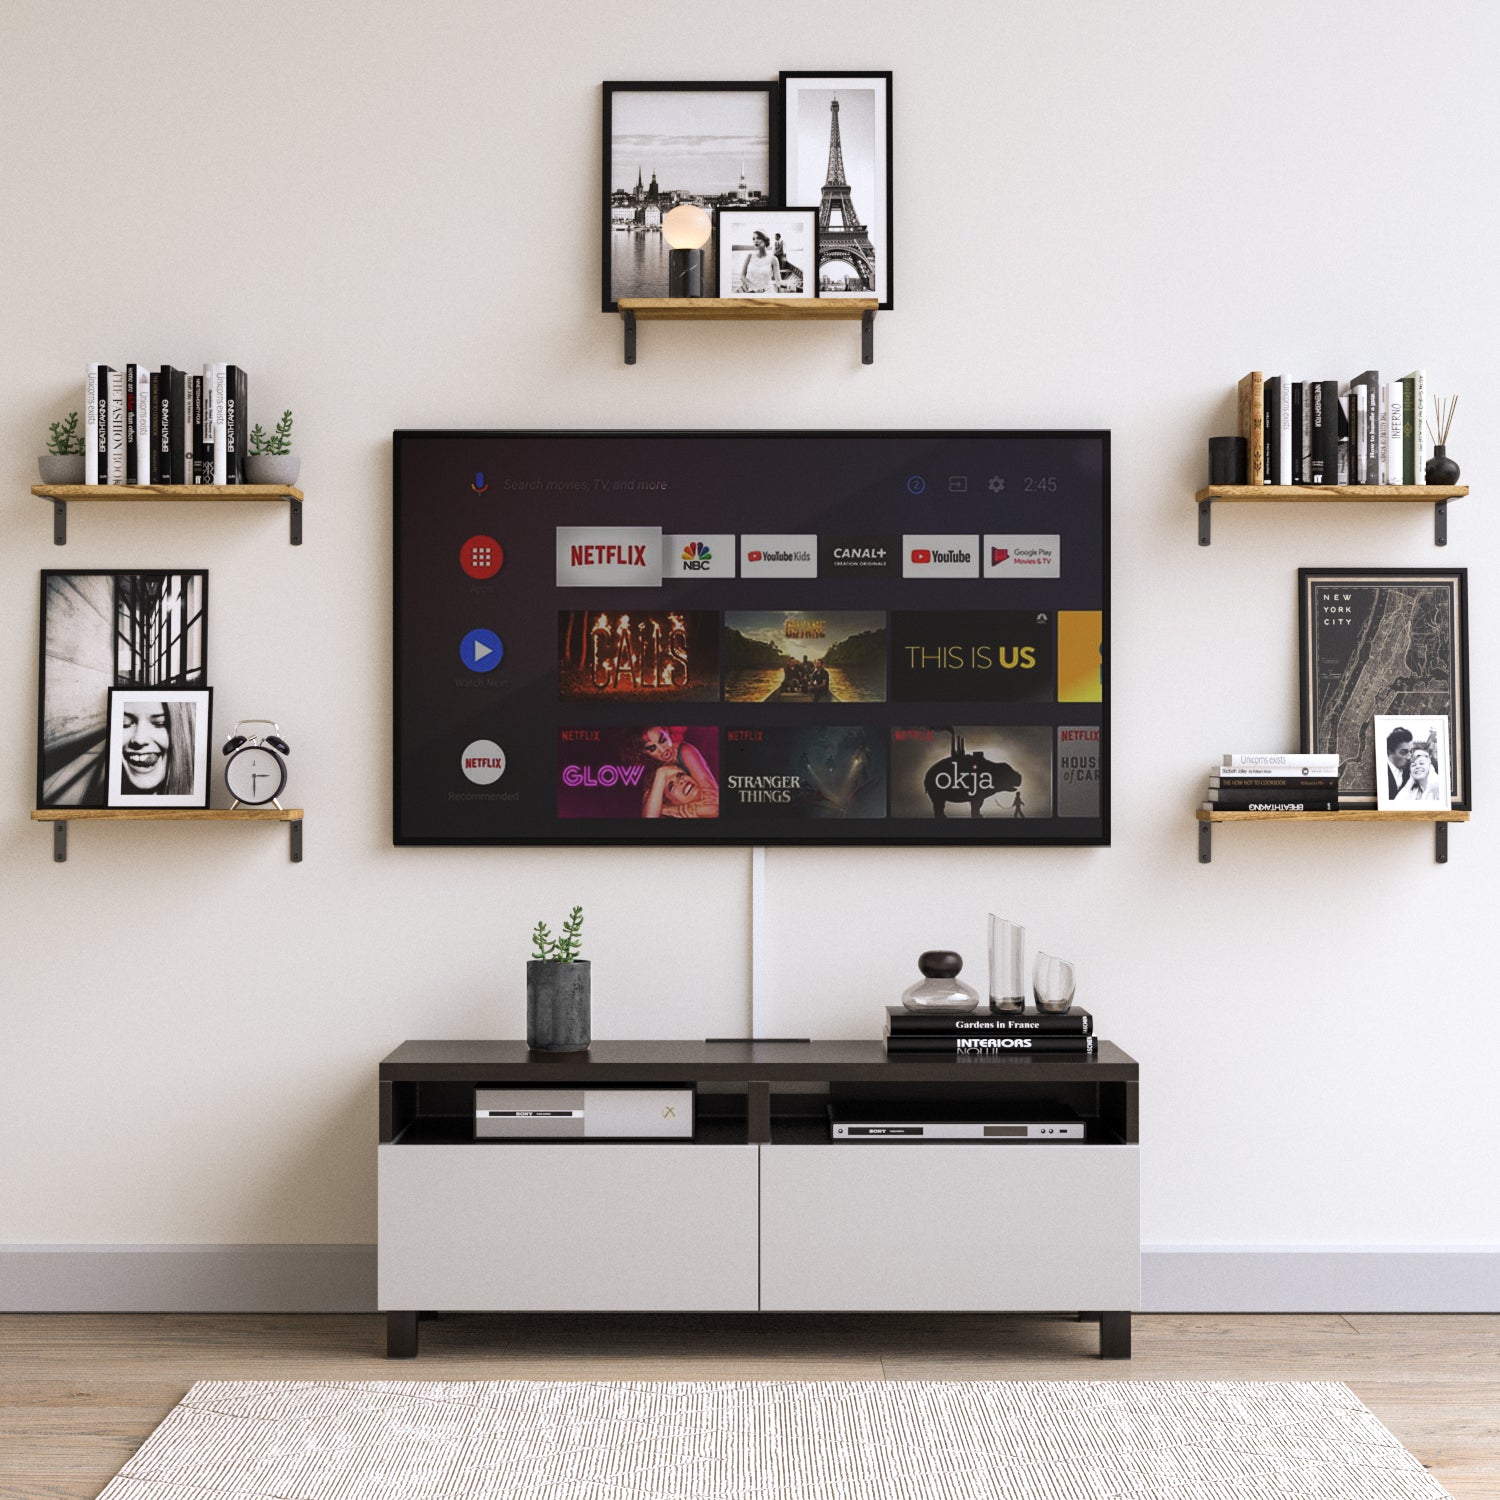 PALMA Shelf Brackets for Floating Shelves, Wall Shelves Brackets for Rustic Decor - Set of 2 - Wallniture